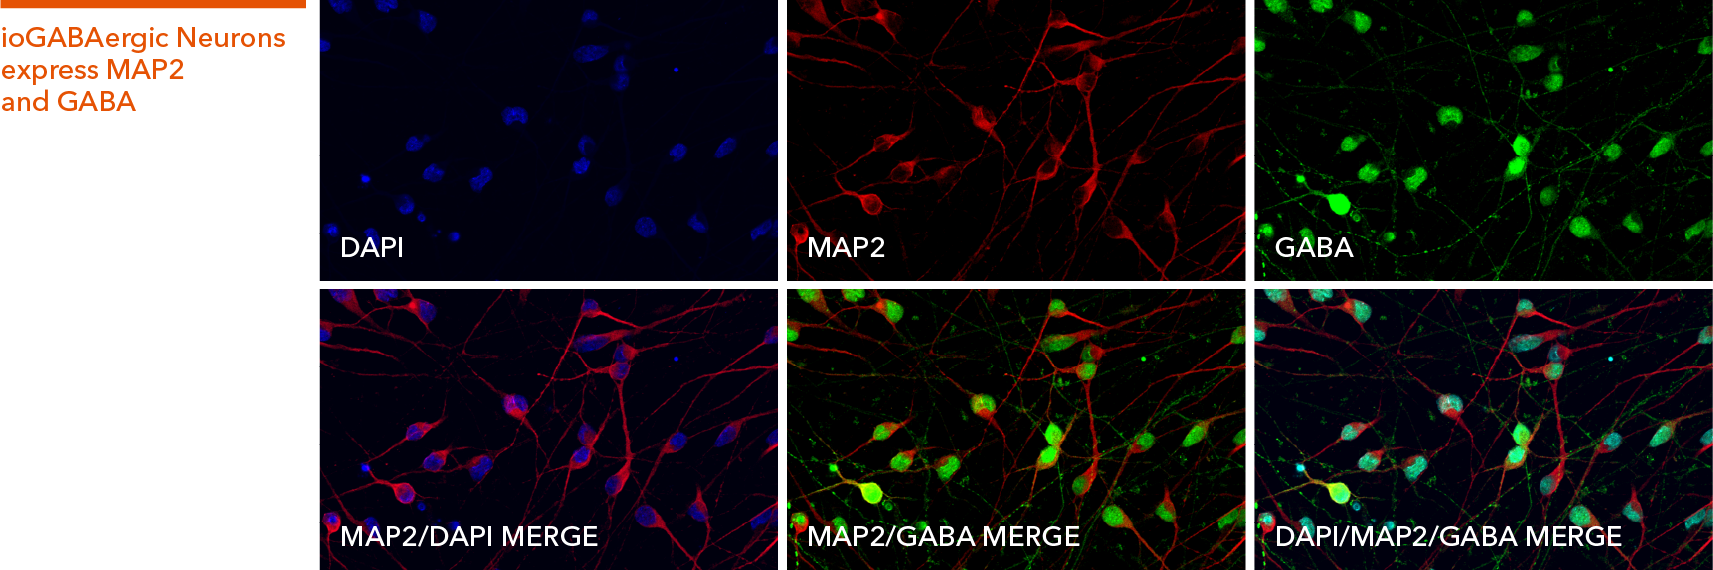 Immunocytochemistry showing ioGABAergic Neurons express key markers GABA and MAP2